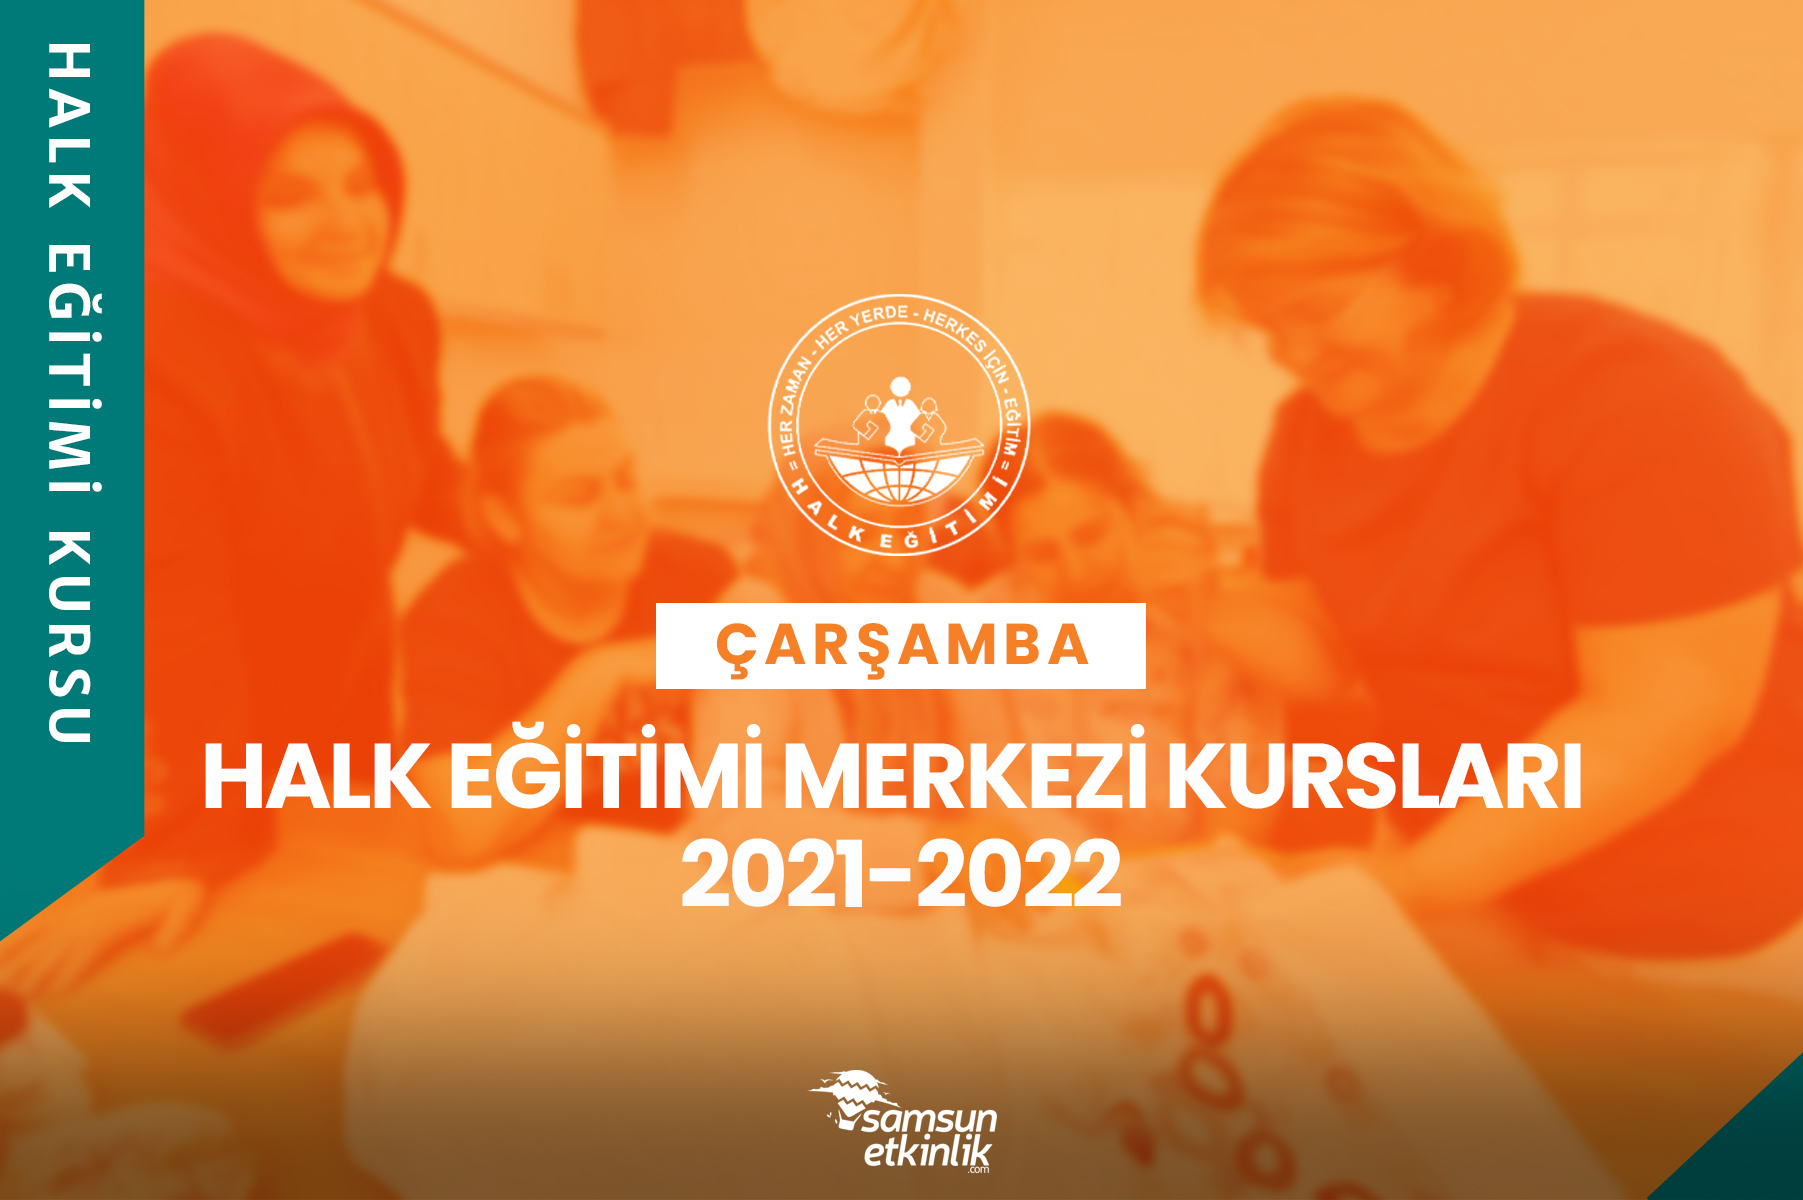 Samsun Çarşamba Halk Eğitimi Merkezi Kursları 2021-2022